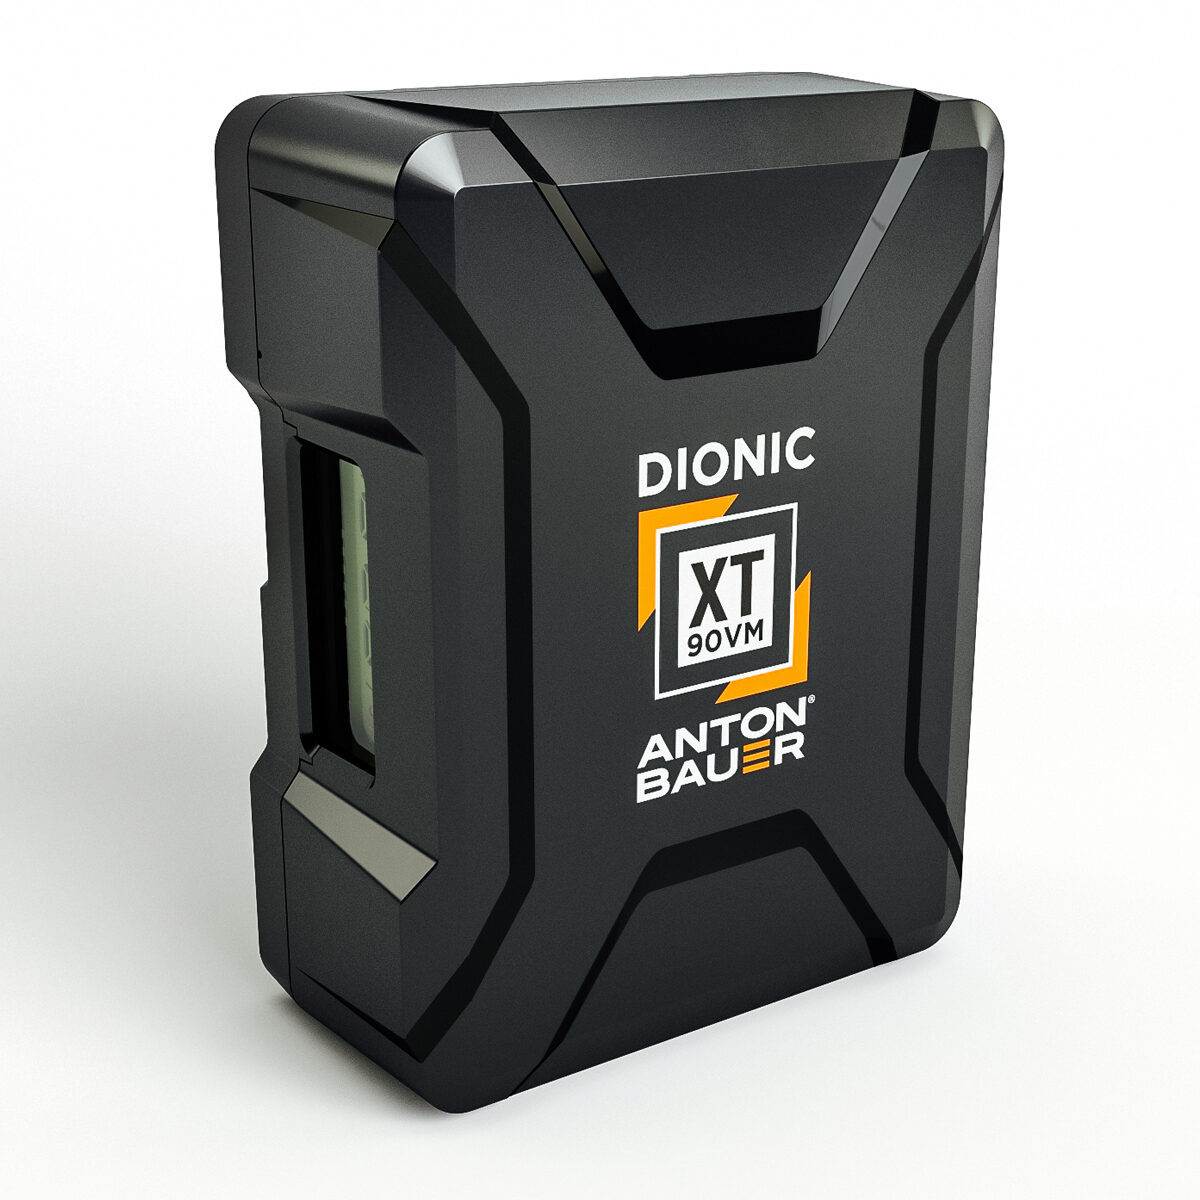 Dionic XT 90 V-mount